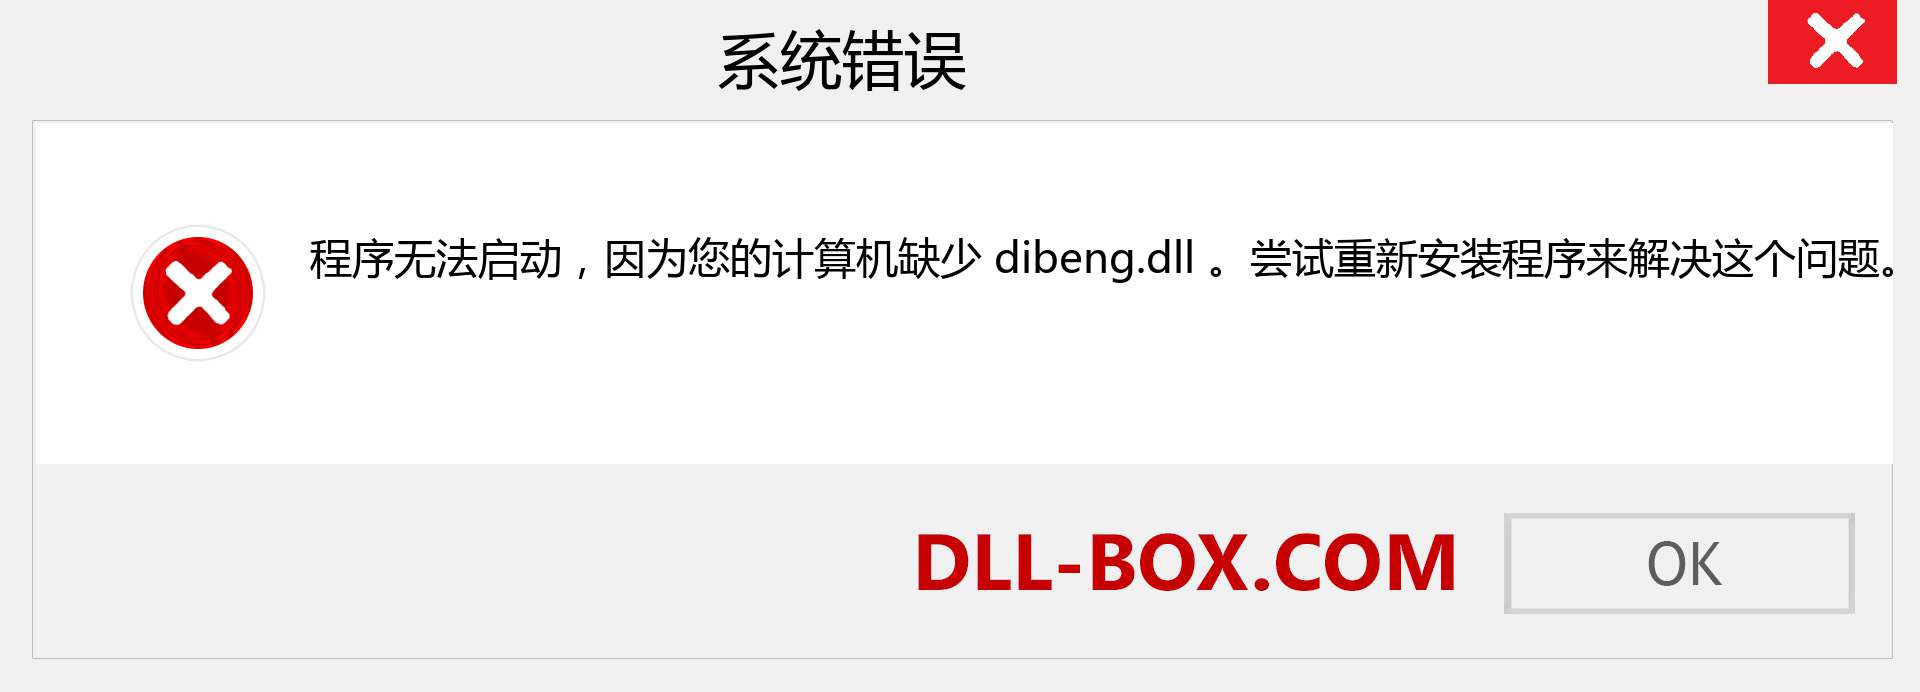 dibeng.dll 文件丢失？。 适用于 Windows 7、8、10 的下载 - 修复 Windows、照片、图像上的 dibeng dll 丢失错误